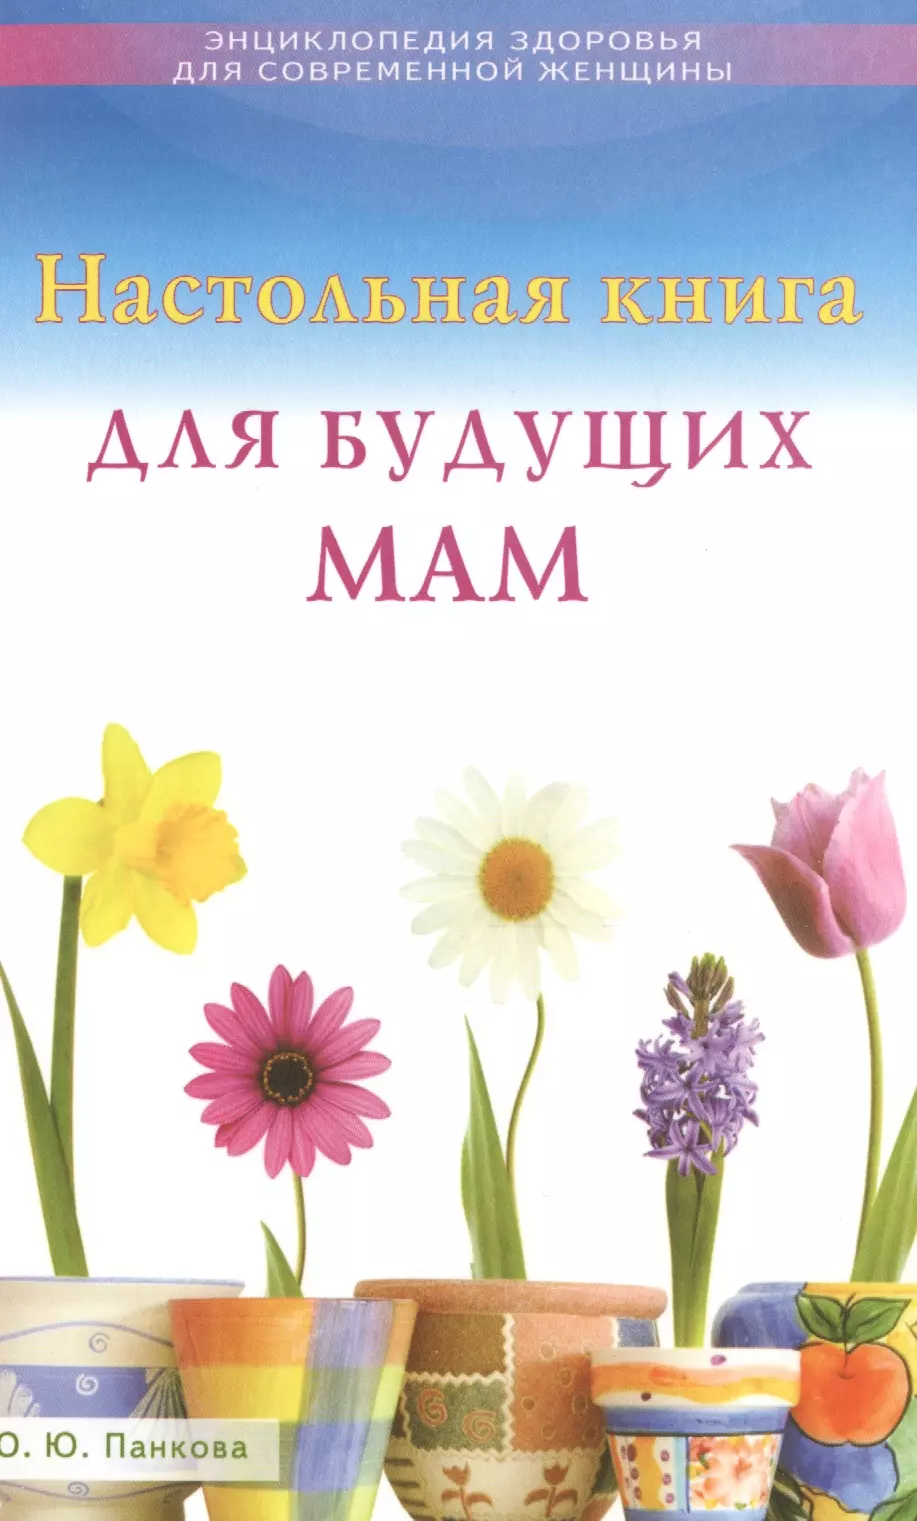 Панкова Ольга Юрьевна Настольная книга для будущих мам